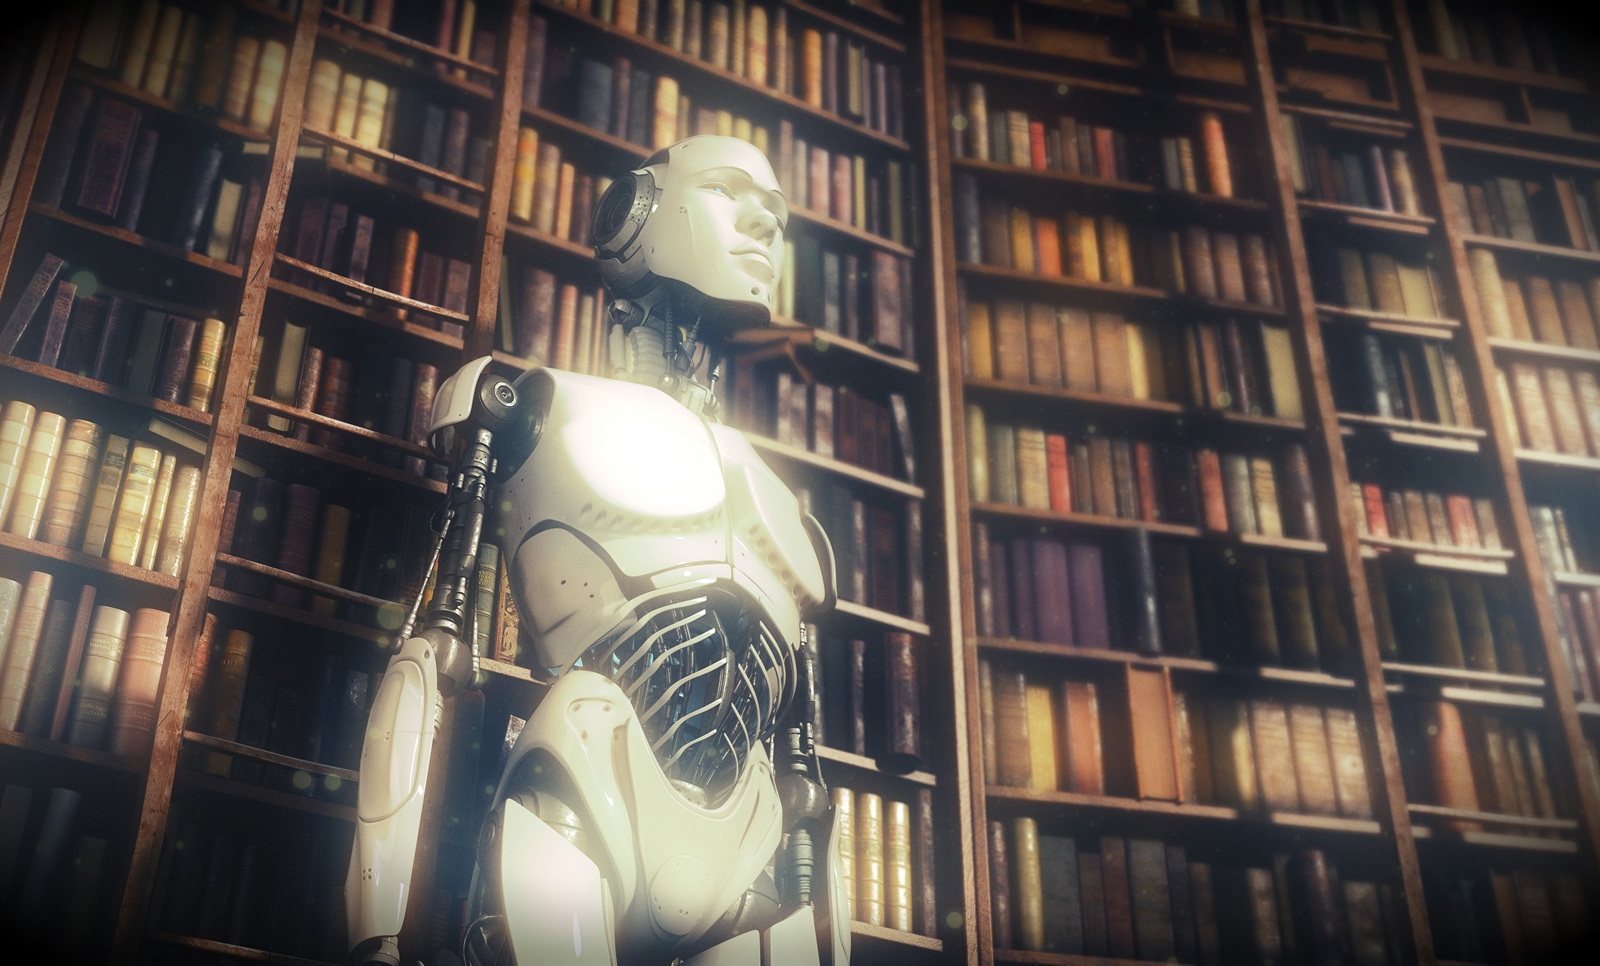 Futuristic robot in classic library by Vladislav Ociacia